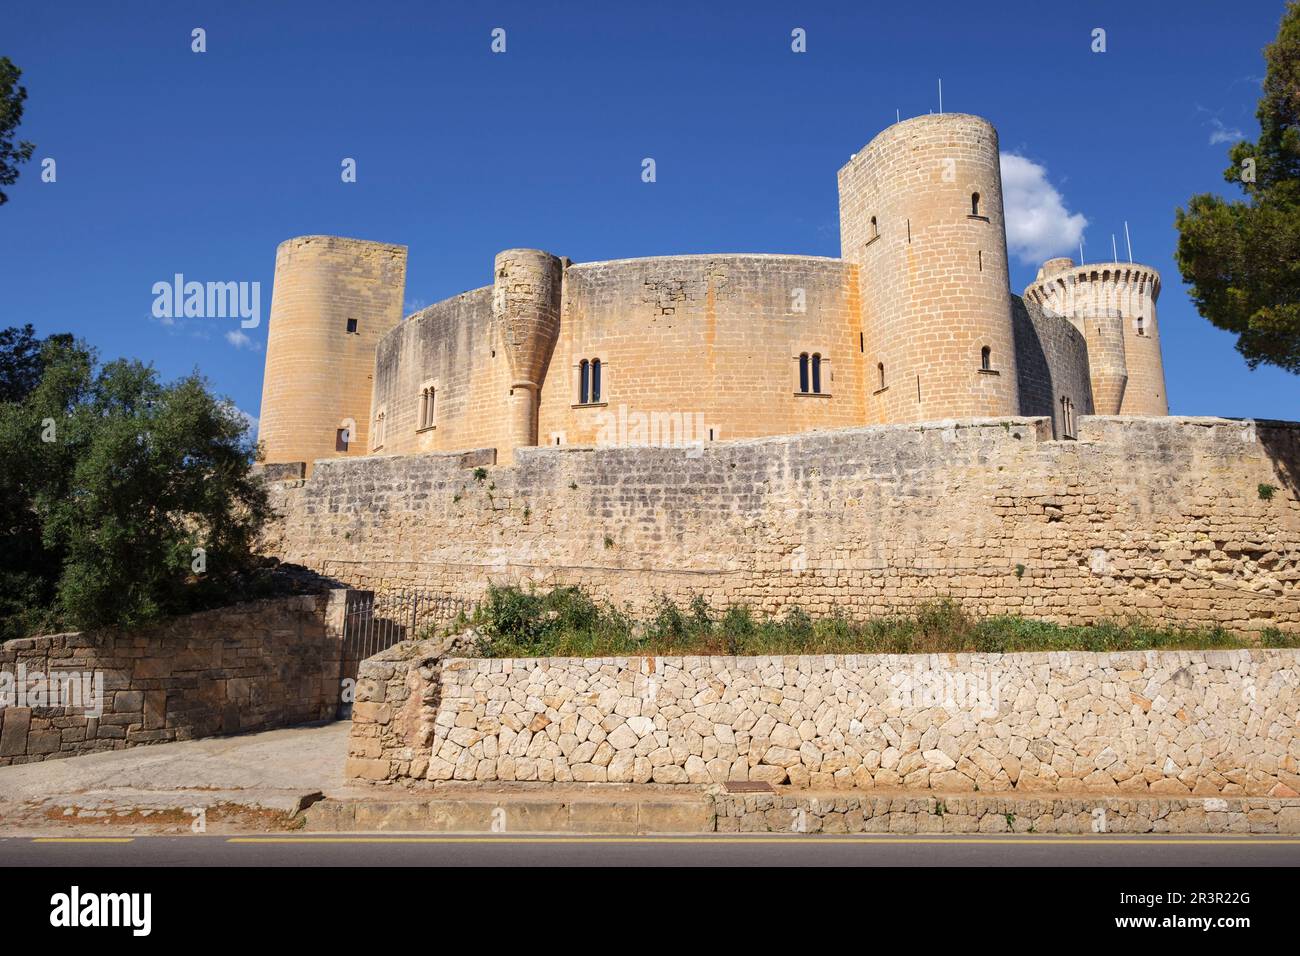 castillo de Bellver, siglo XIV, estilo gótico, Mallorca, balearic islands, Spain. Stock Photo